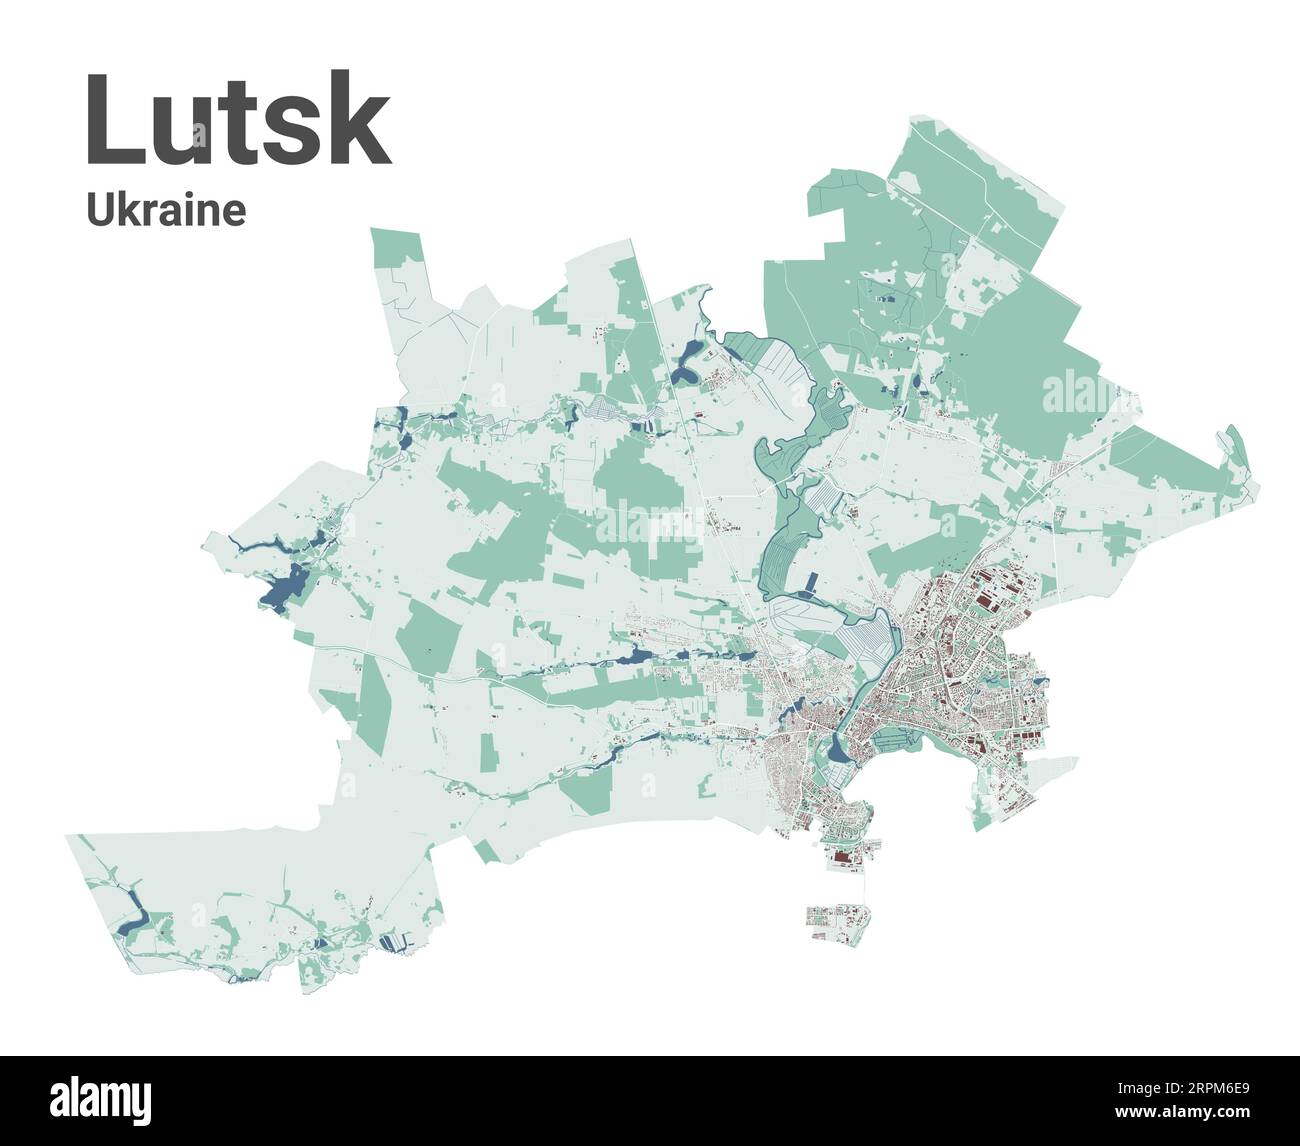 Carte de Lutsk, ville en Ukraine. Carte de la zone administrative municipale avec les bâtiments, les rivières et les routes, les parcs et les voies ferrées. Illustration vectorielle. Illustration de Vecteur